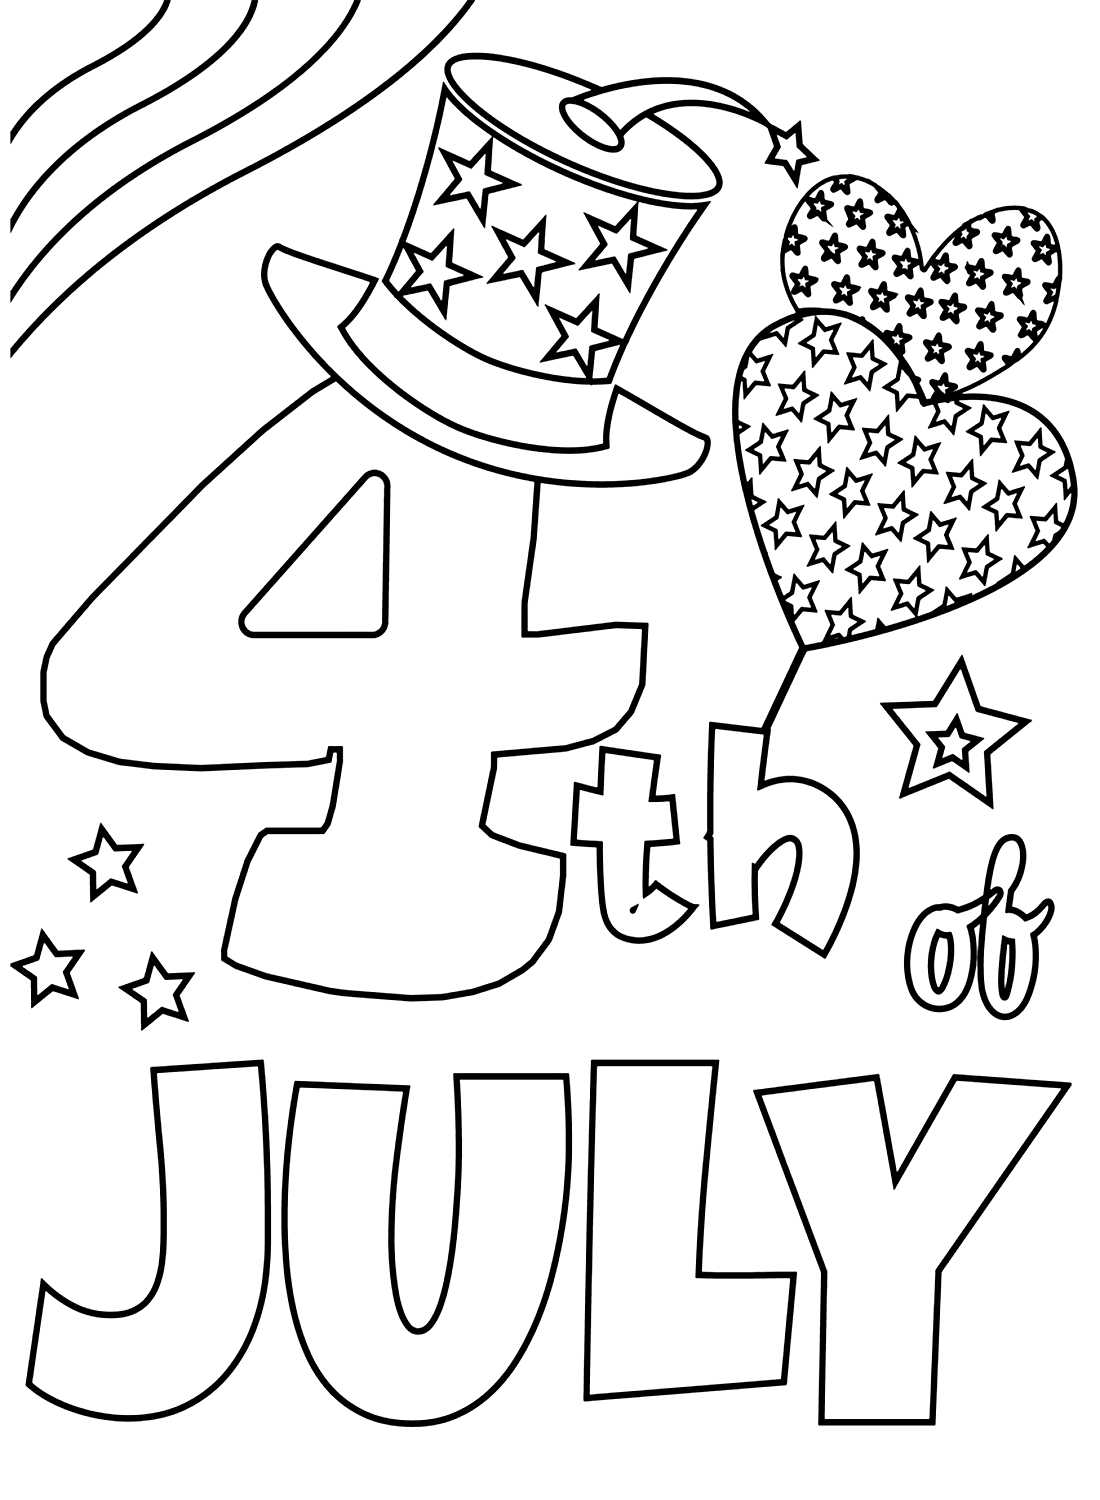 4 juli met harten vanaf 4 juli